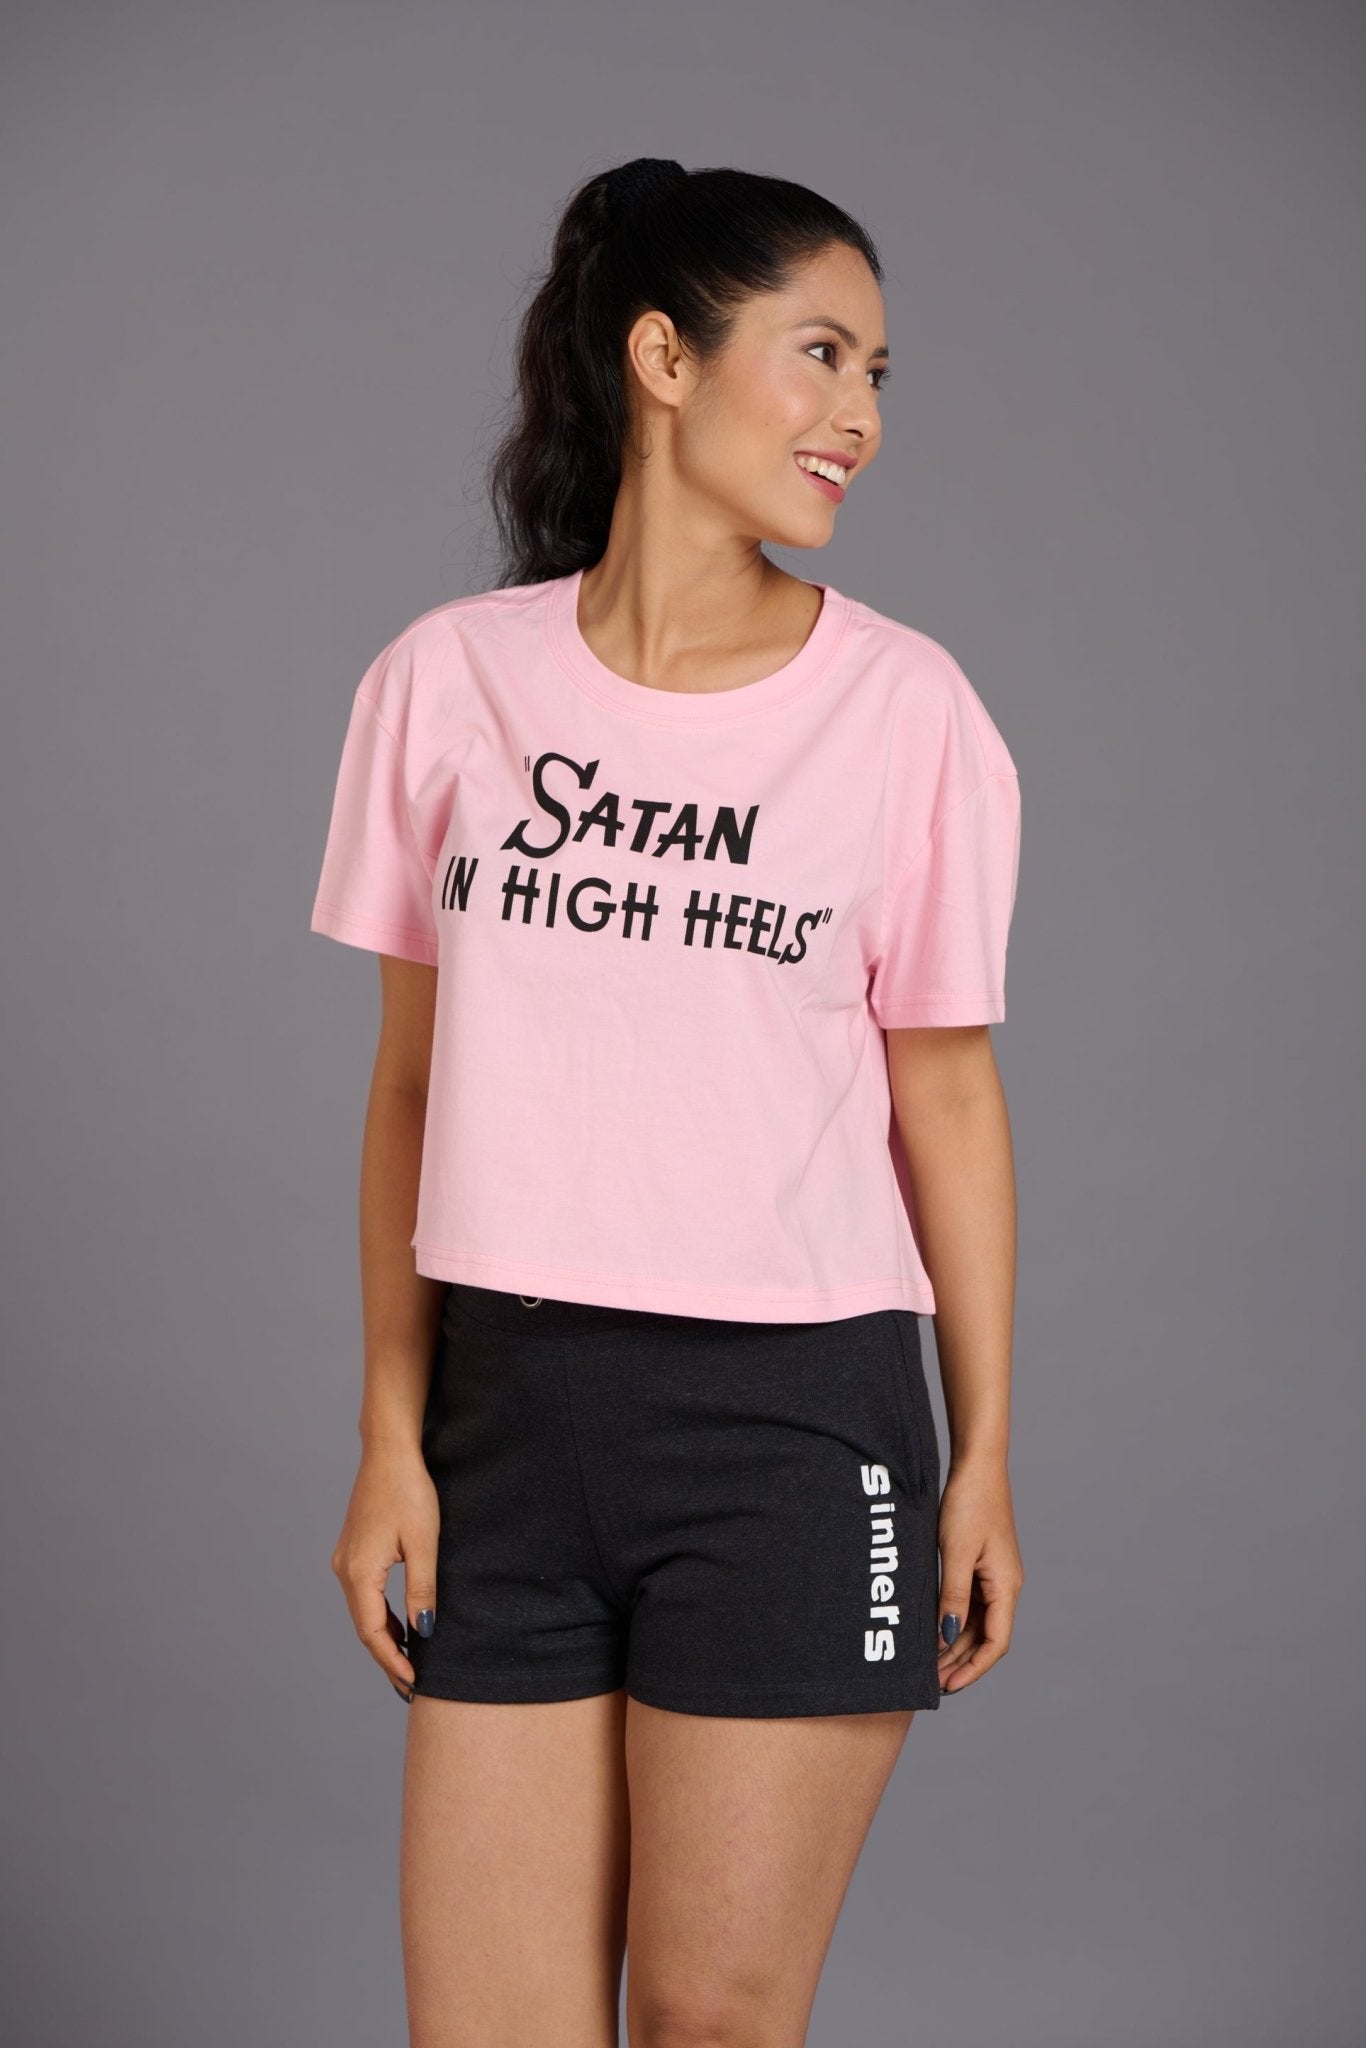 Satan In High Heels Light Pink Oversized T-Shirt for Women - Go Devil